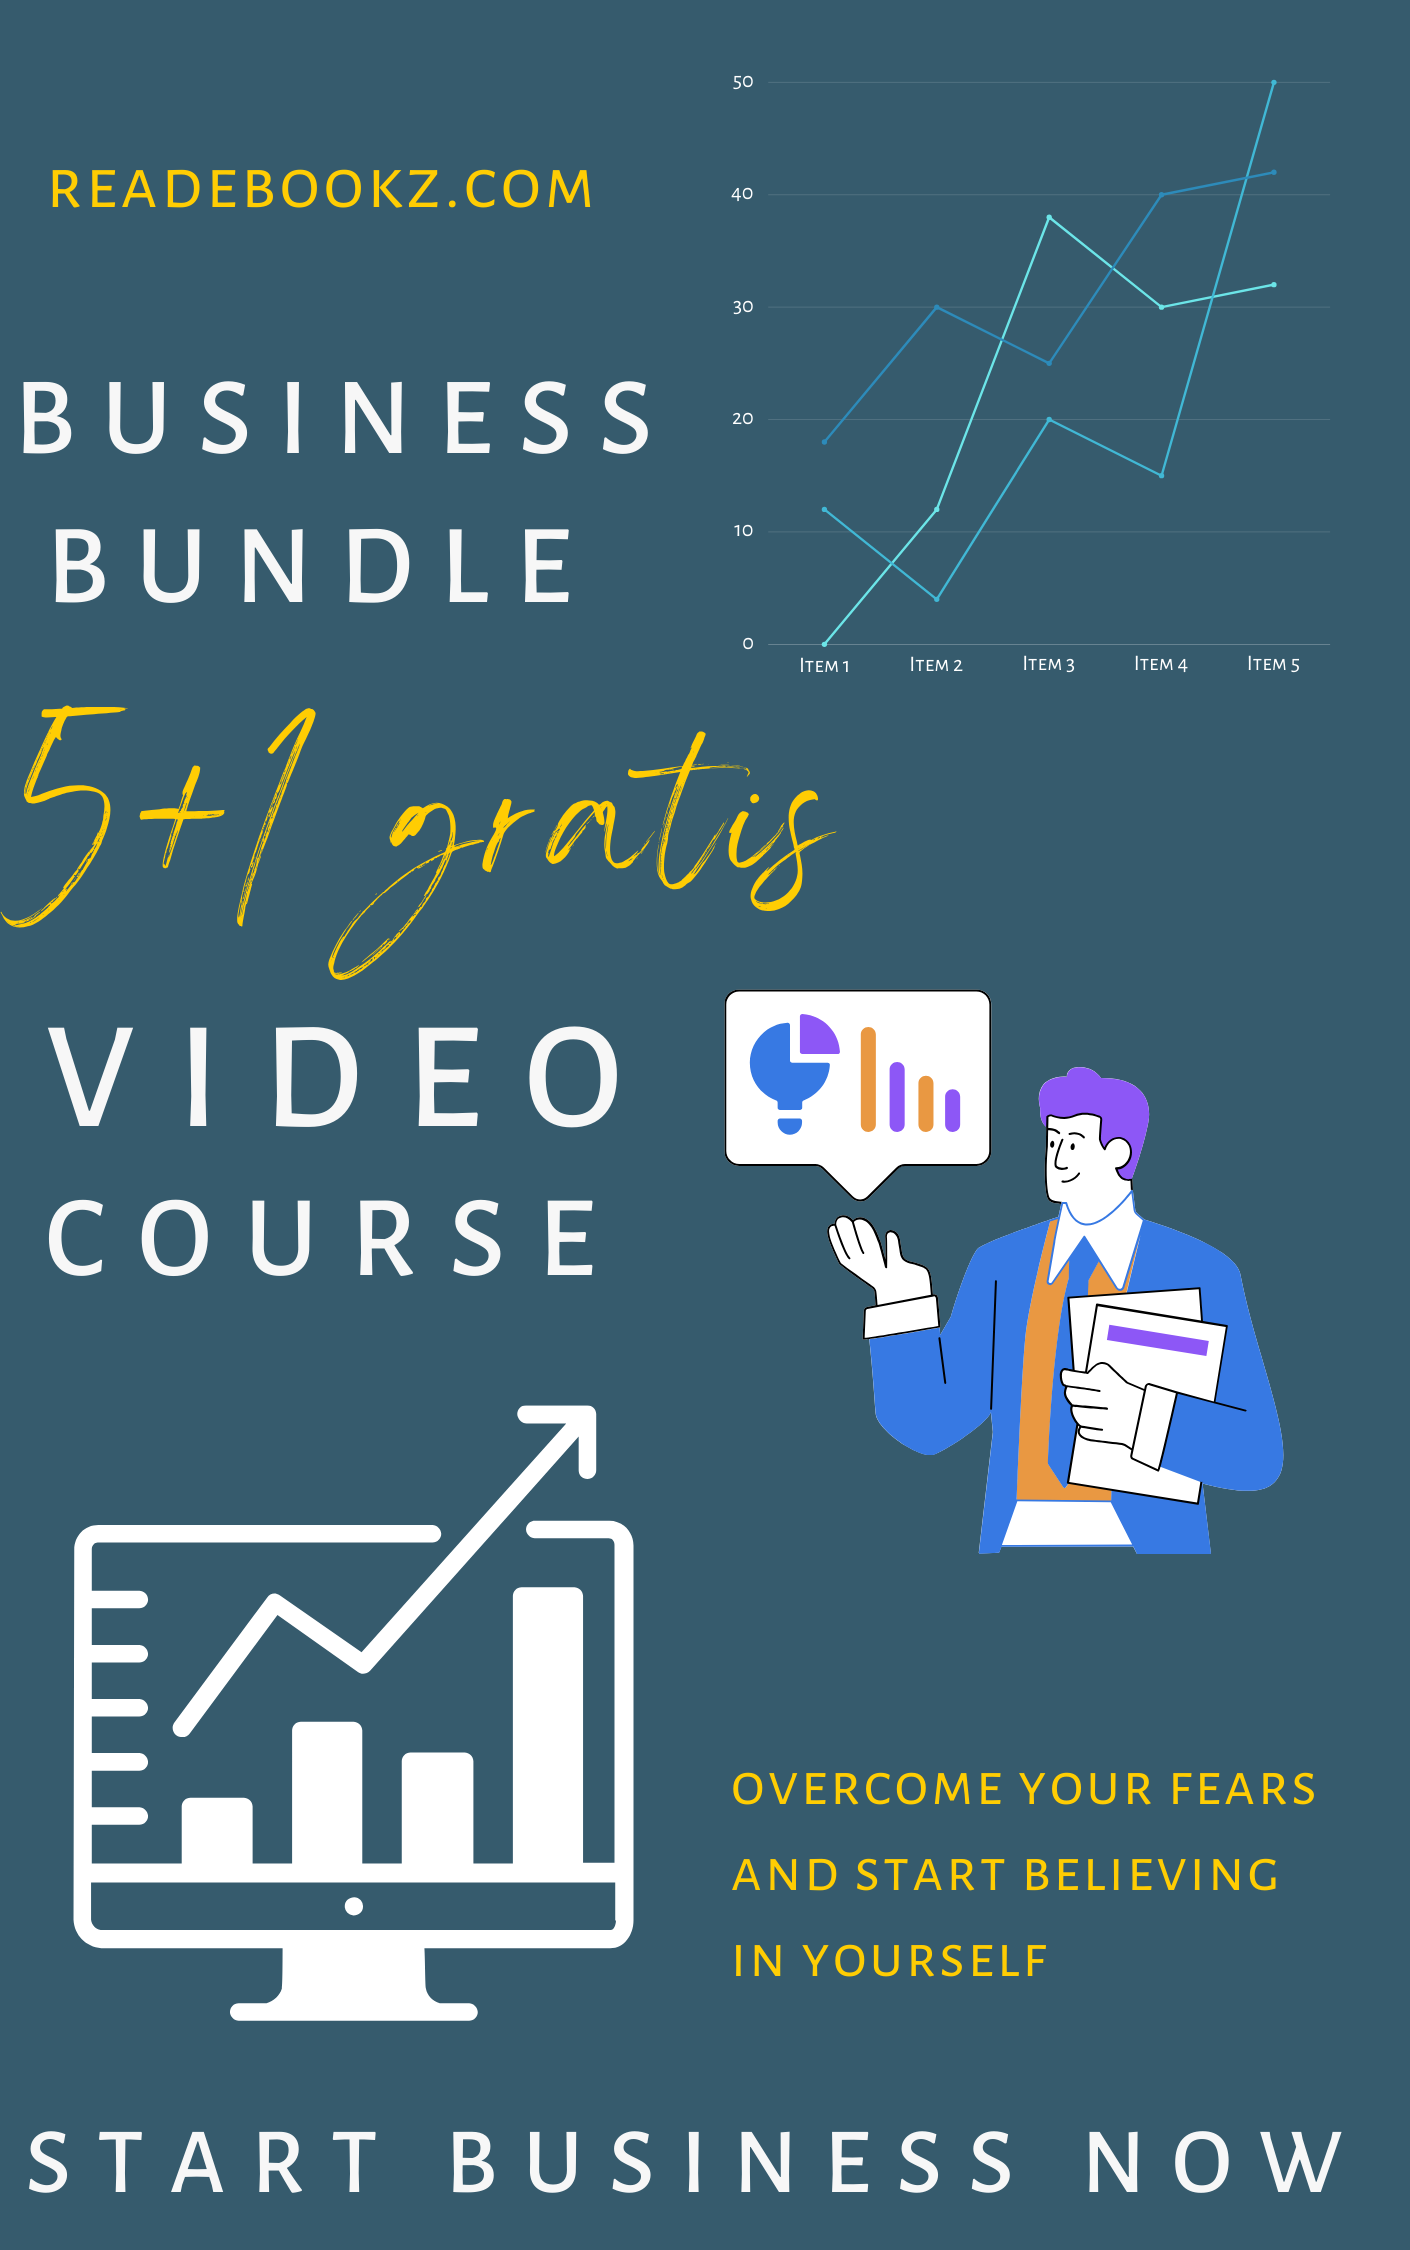 Business Video Course Bundle 5+1 gratis